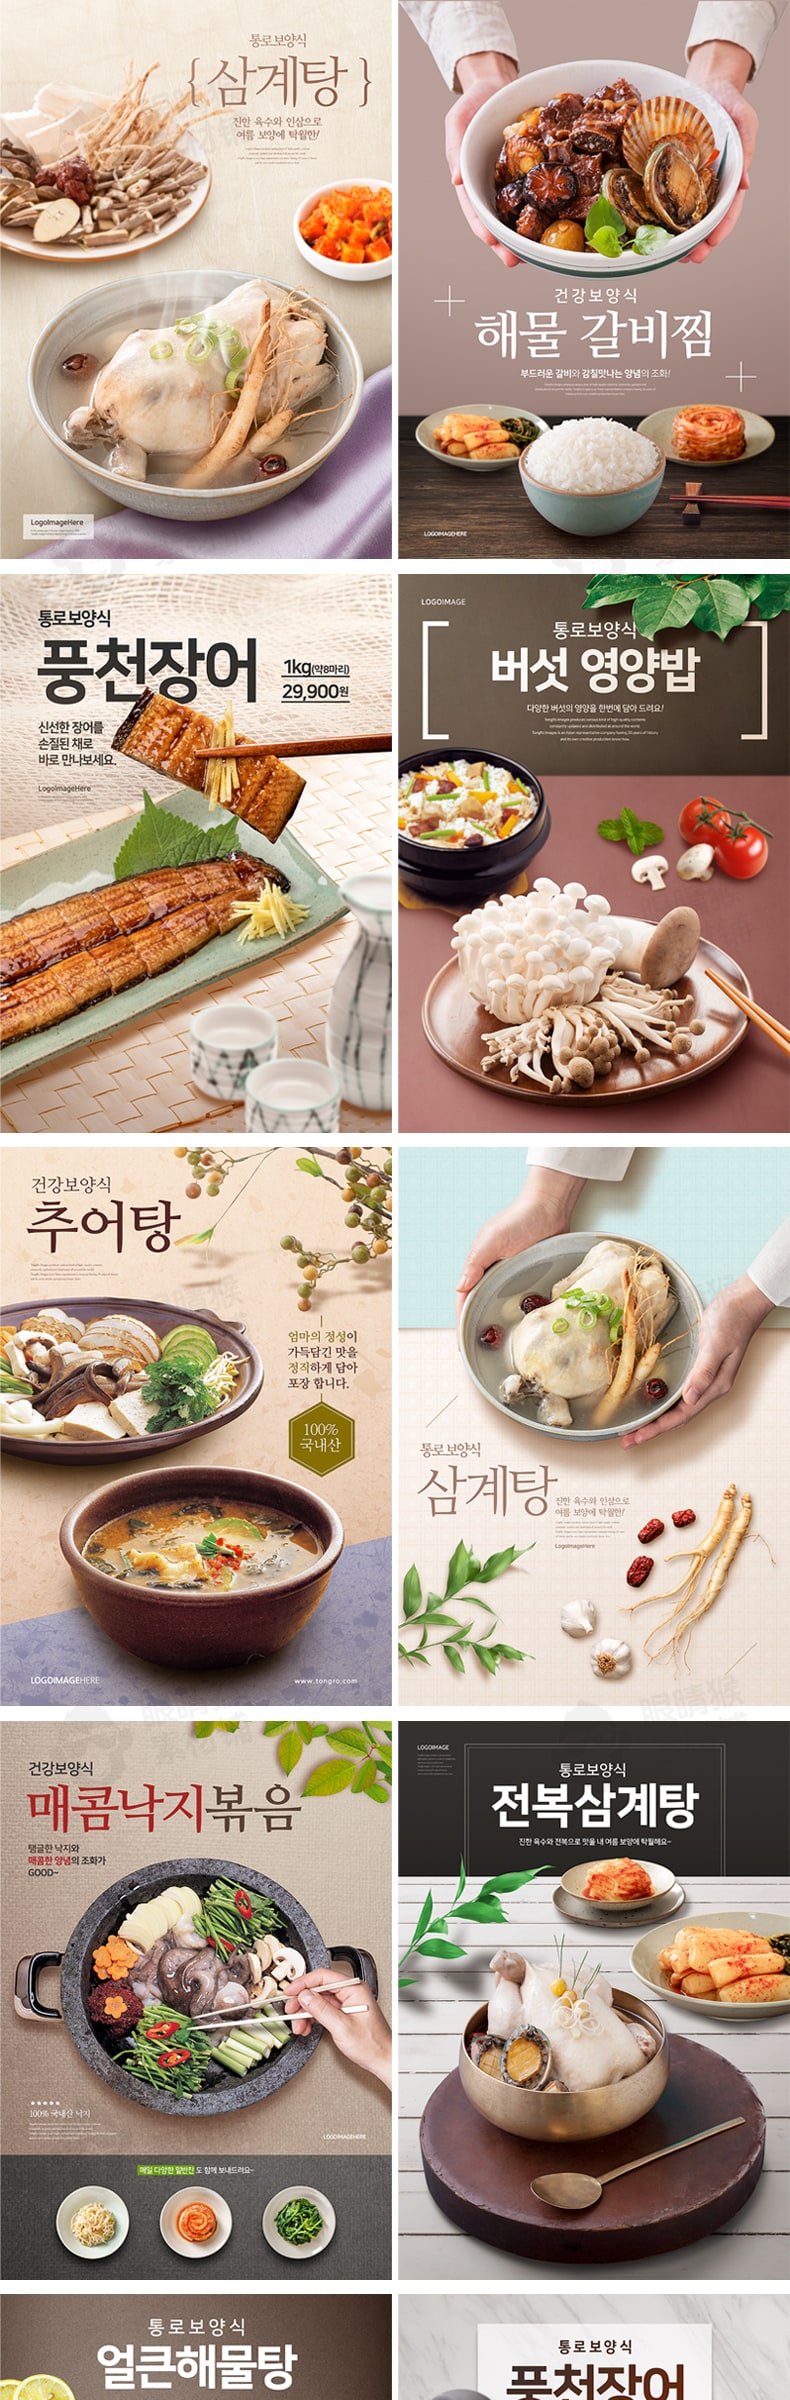 精选高端韩国料理食品餐饮宣传海报灯箱分层psd设计素材源文件-海报素材-到位啦UI